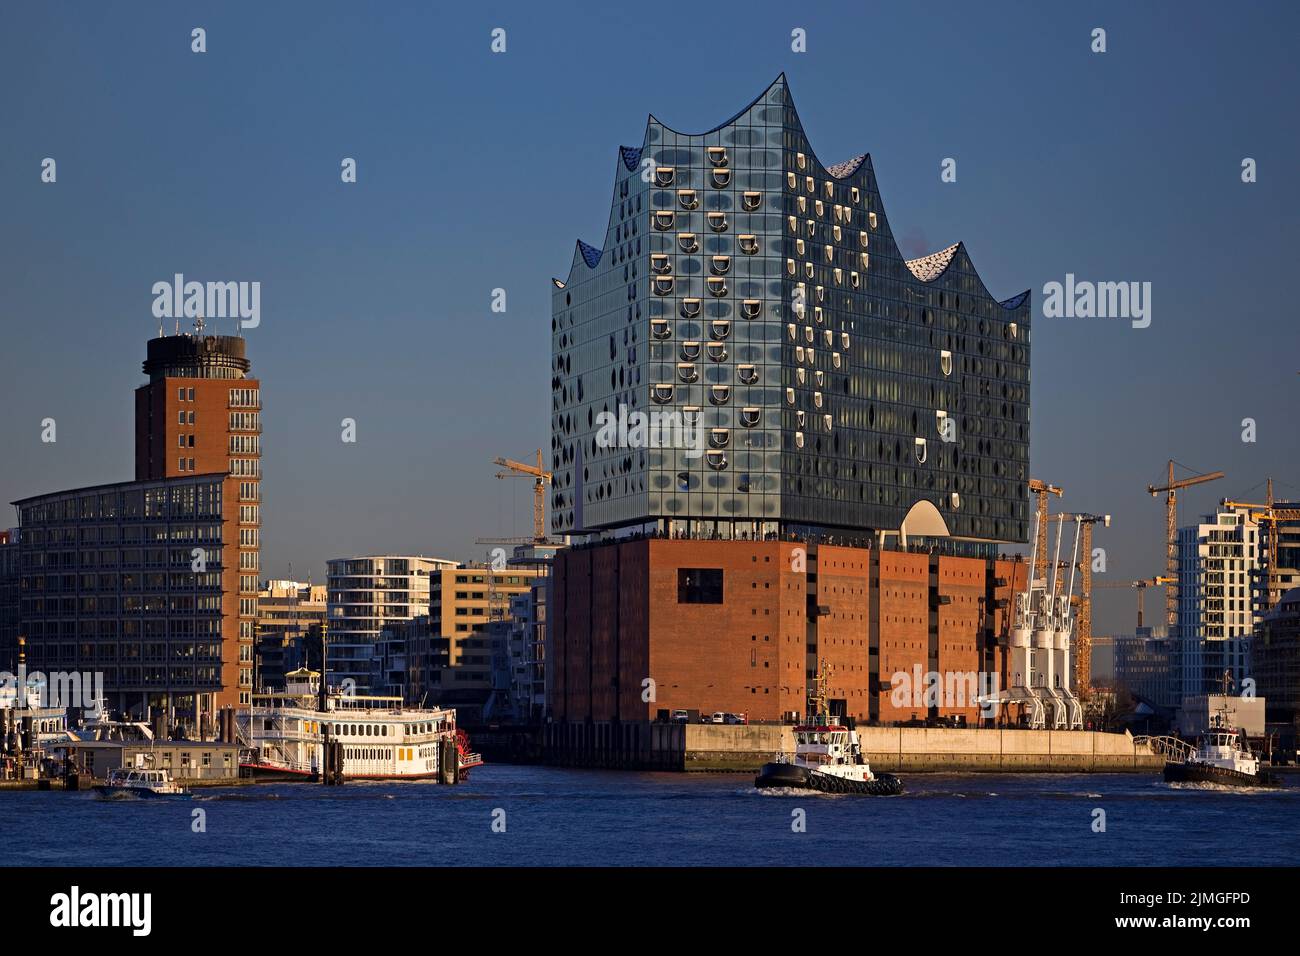 Elbphilharmonie, Hafencity, Hamburg, Deutschland, Europa Stock Photo